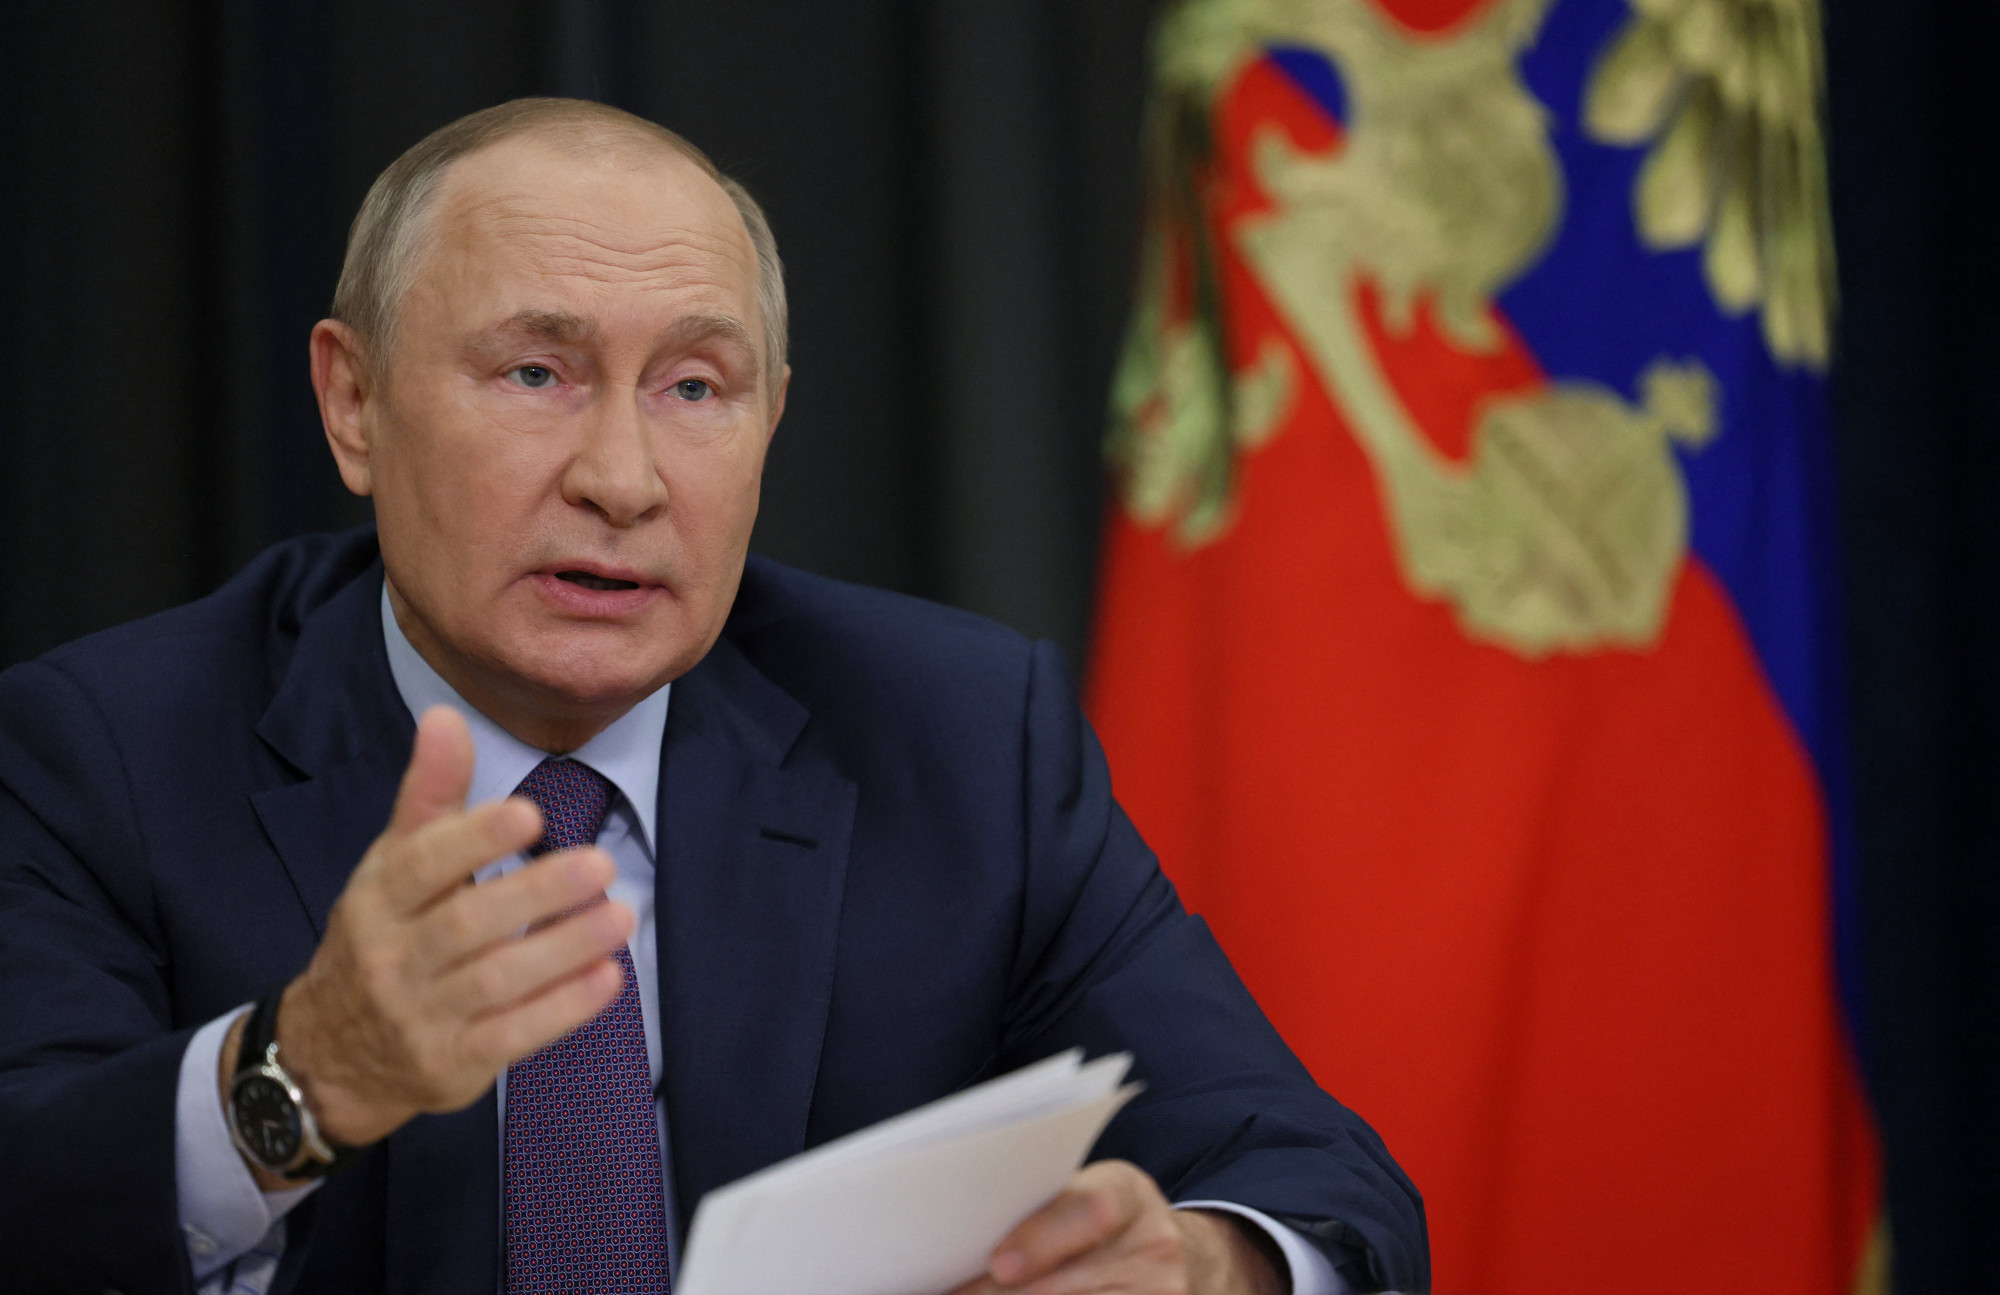 Putyin orosz elnök szerint ők csak meg akarják menteni a megszállt ukrán megyék lakosságát